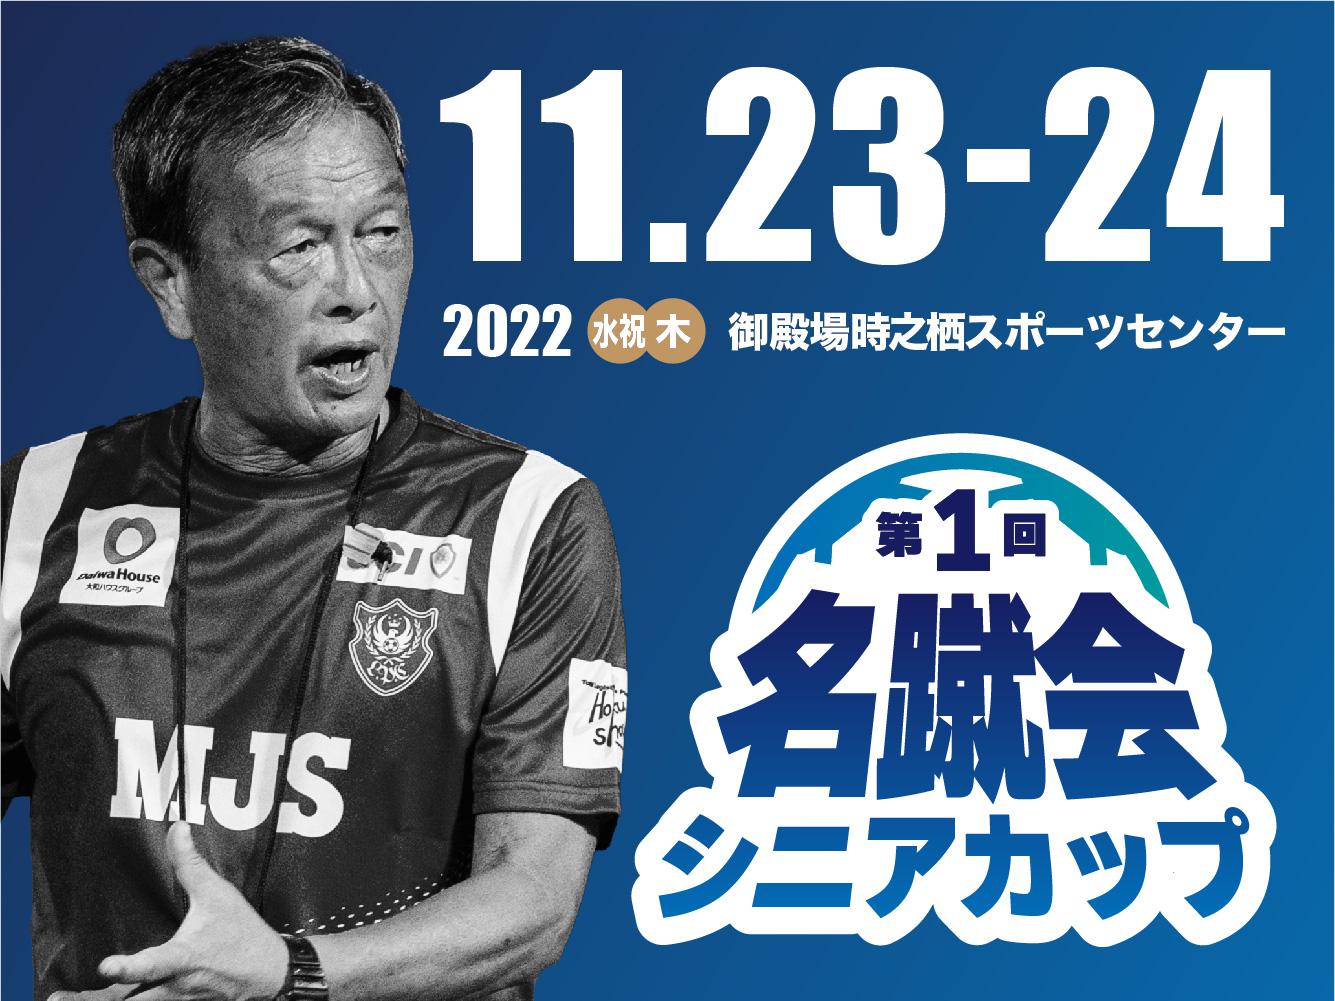 一般社団法人 日本サッカー名蹴会 公式サイト 第1回名蹴会シニアカップ開催のお知らせ